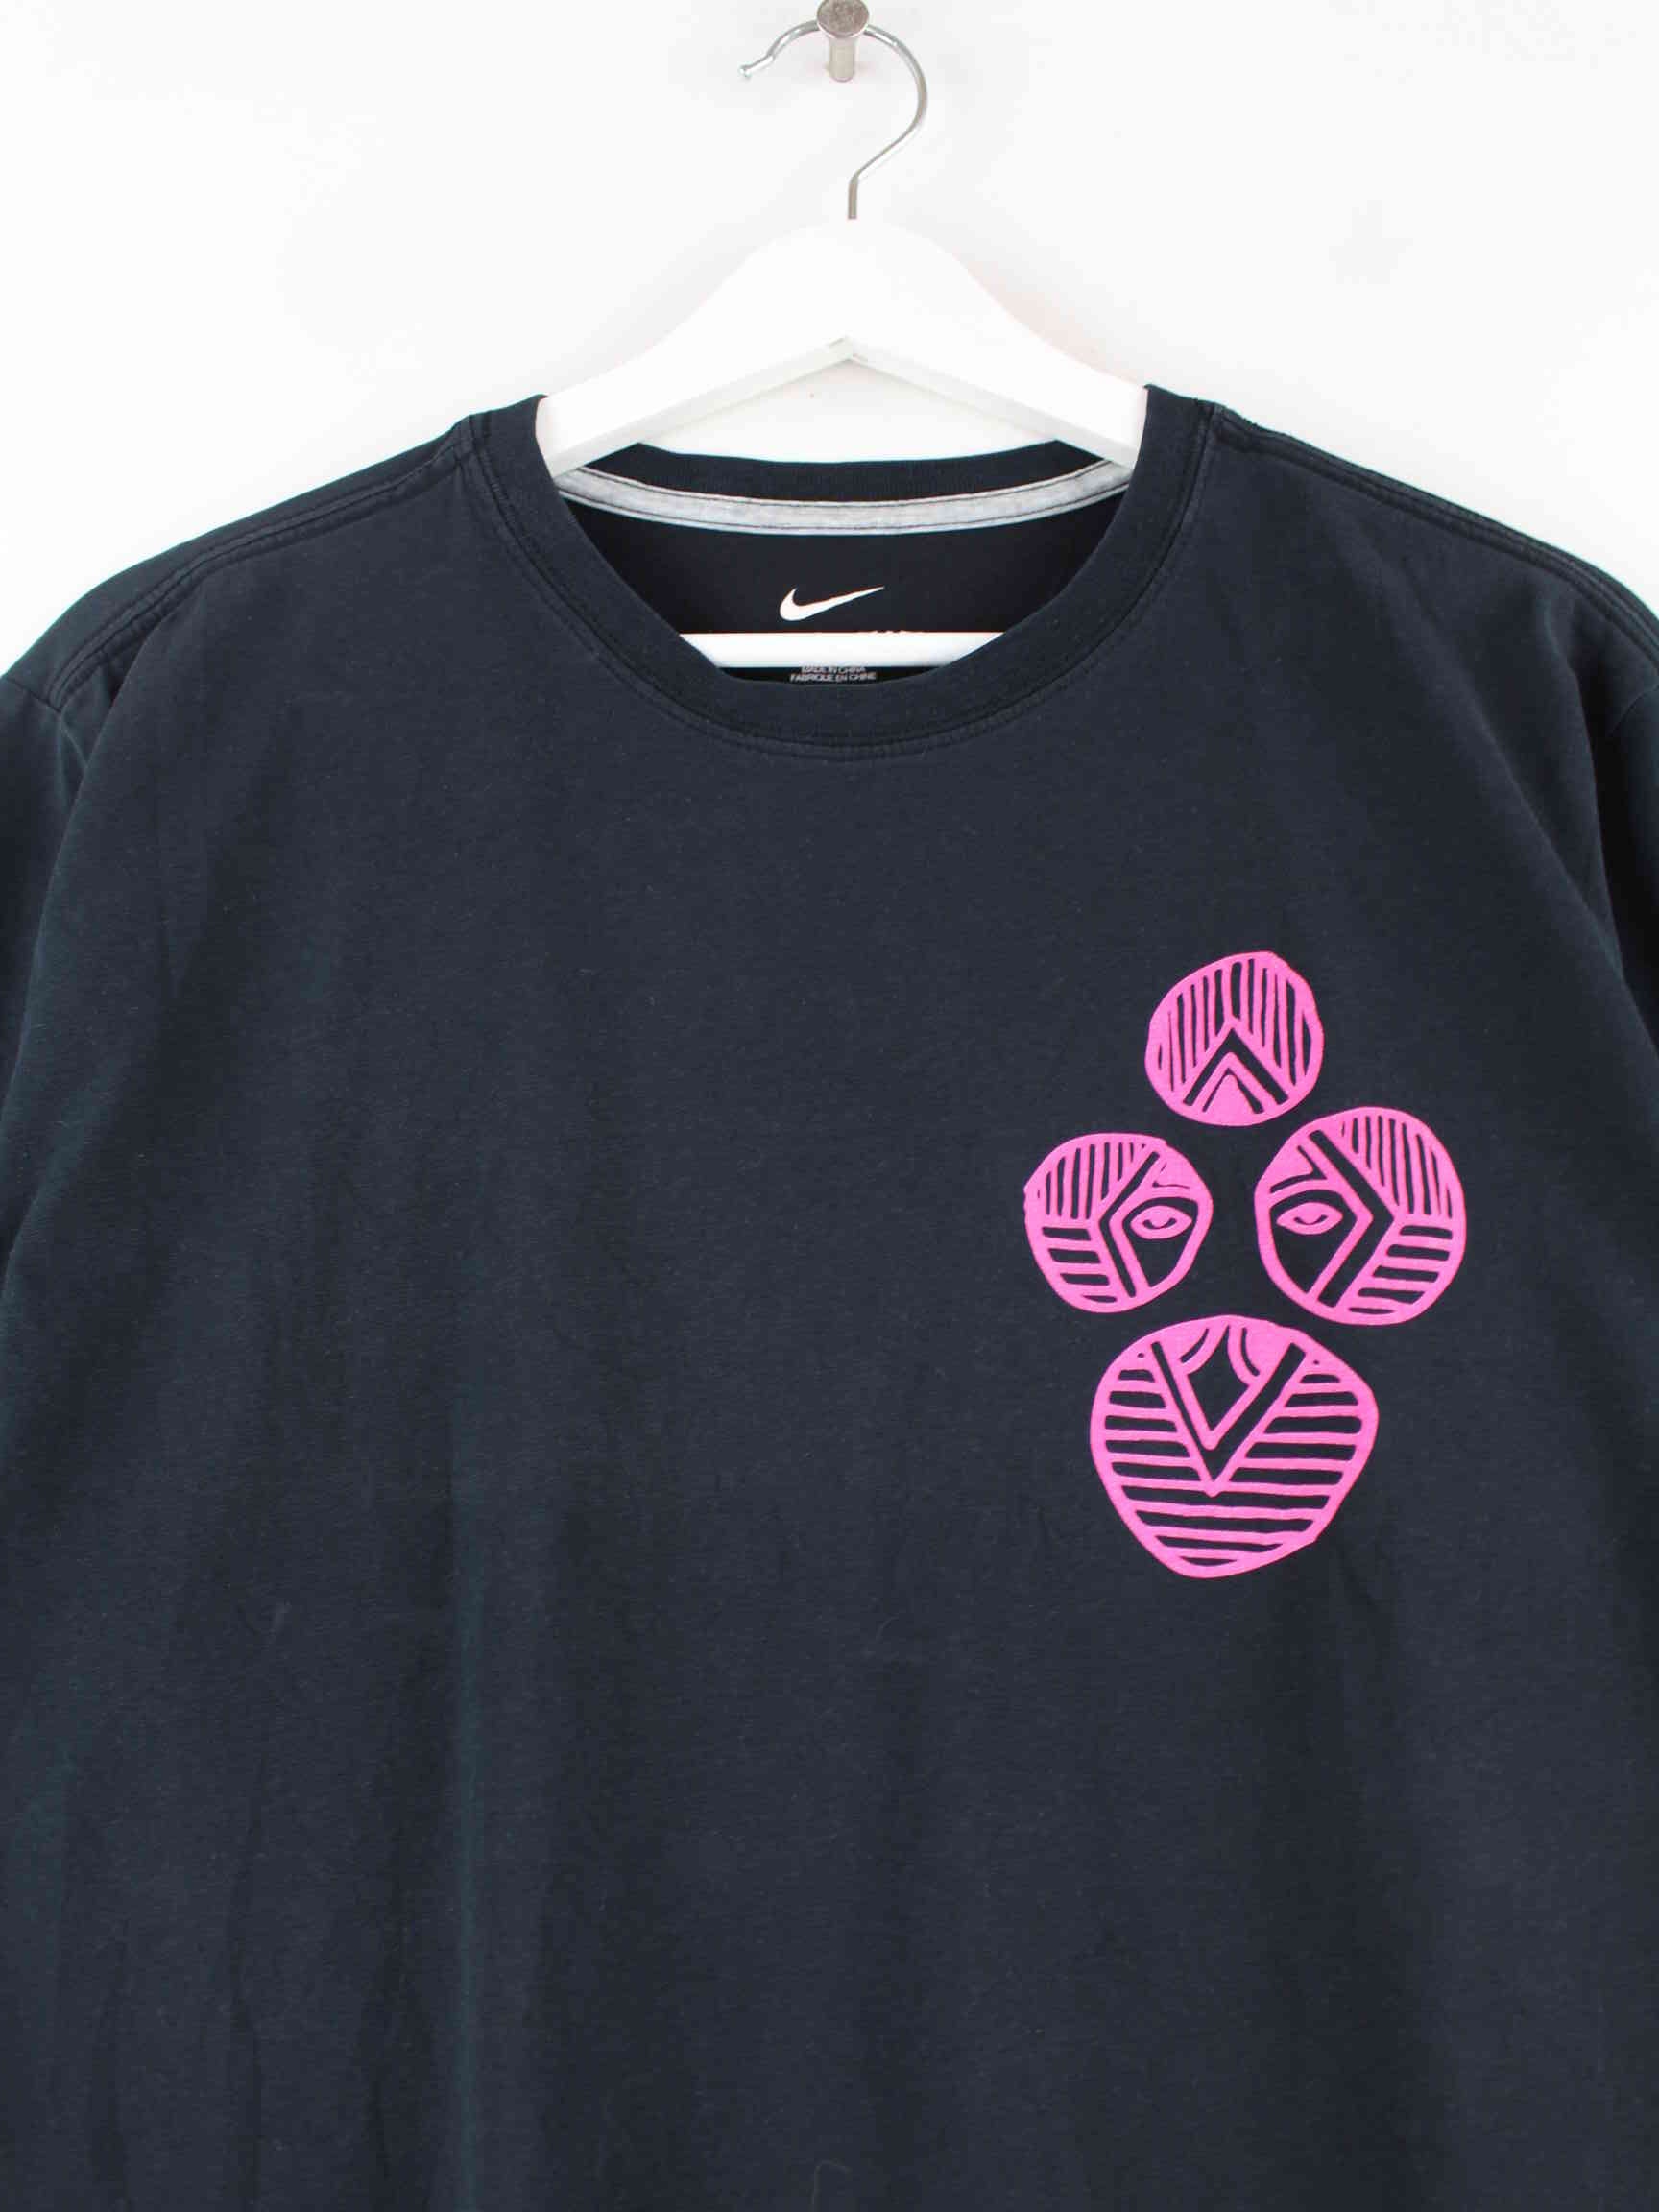 Nike Print Kurzarm T-Shirt Schwarz L (detail image 1)